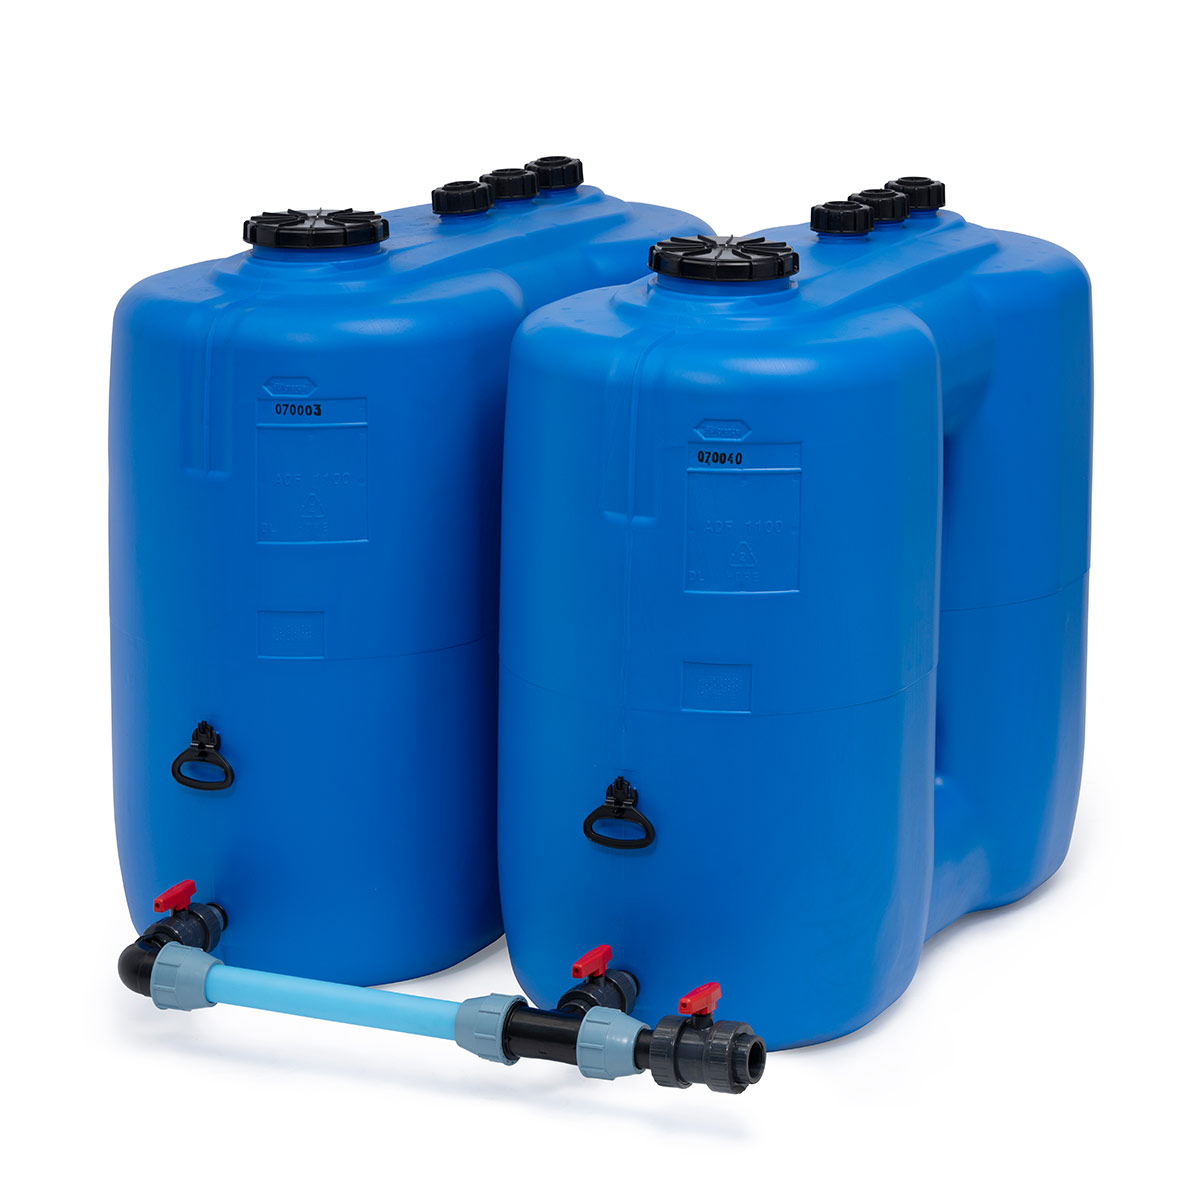 Réservoir de stockage AQF bleu, 1100 l, en PE-HD, convient pour l'eau potable